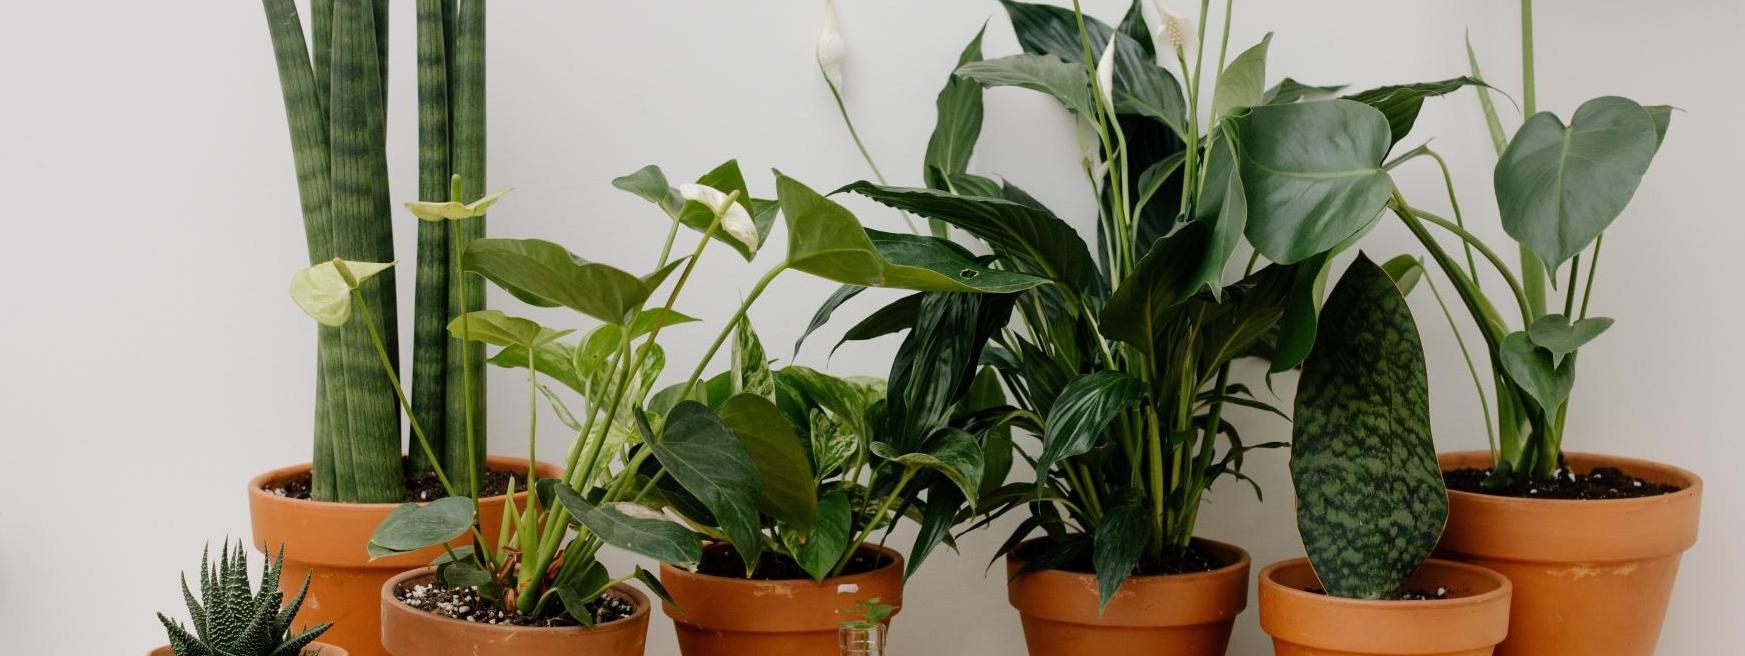 10 Plantas de Interior Fáciles de Cuidar para Principiantes